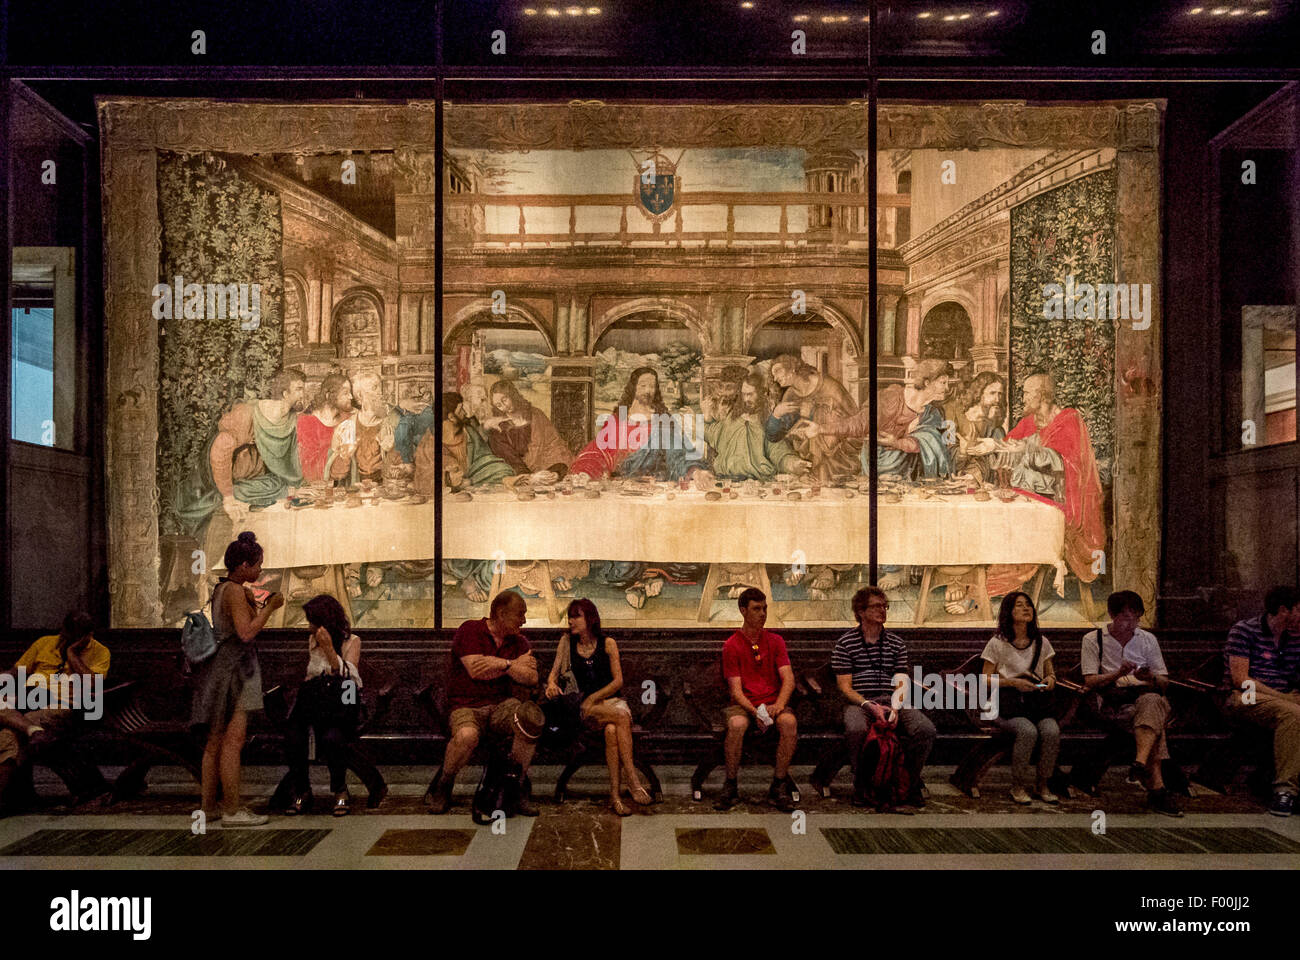 Tapisserie de l'Leonardo da Vinci's last supper. La salle VIII Musées du Vatican. Rome. Italie Banque D'Images